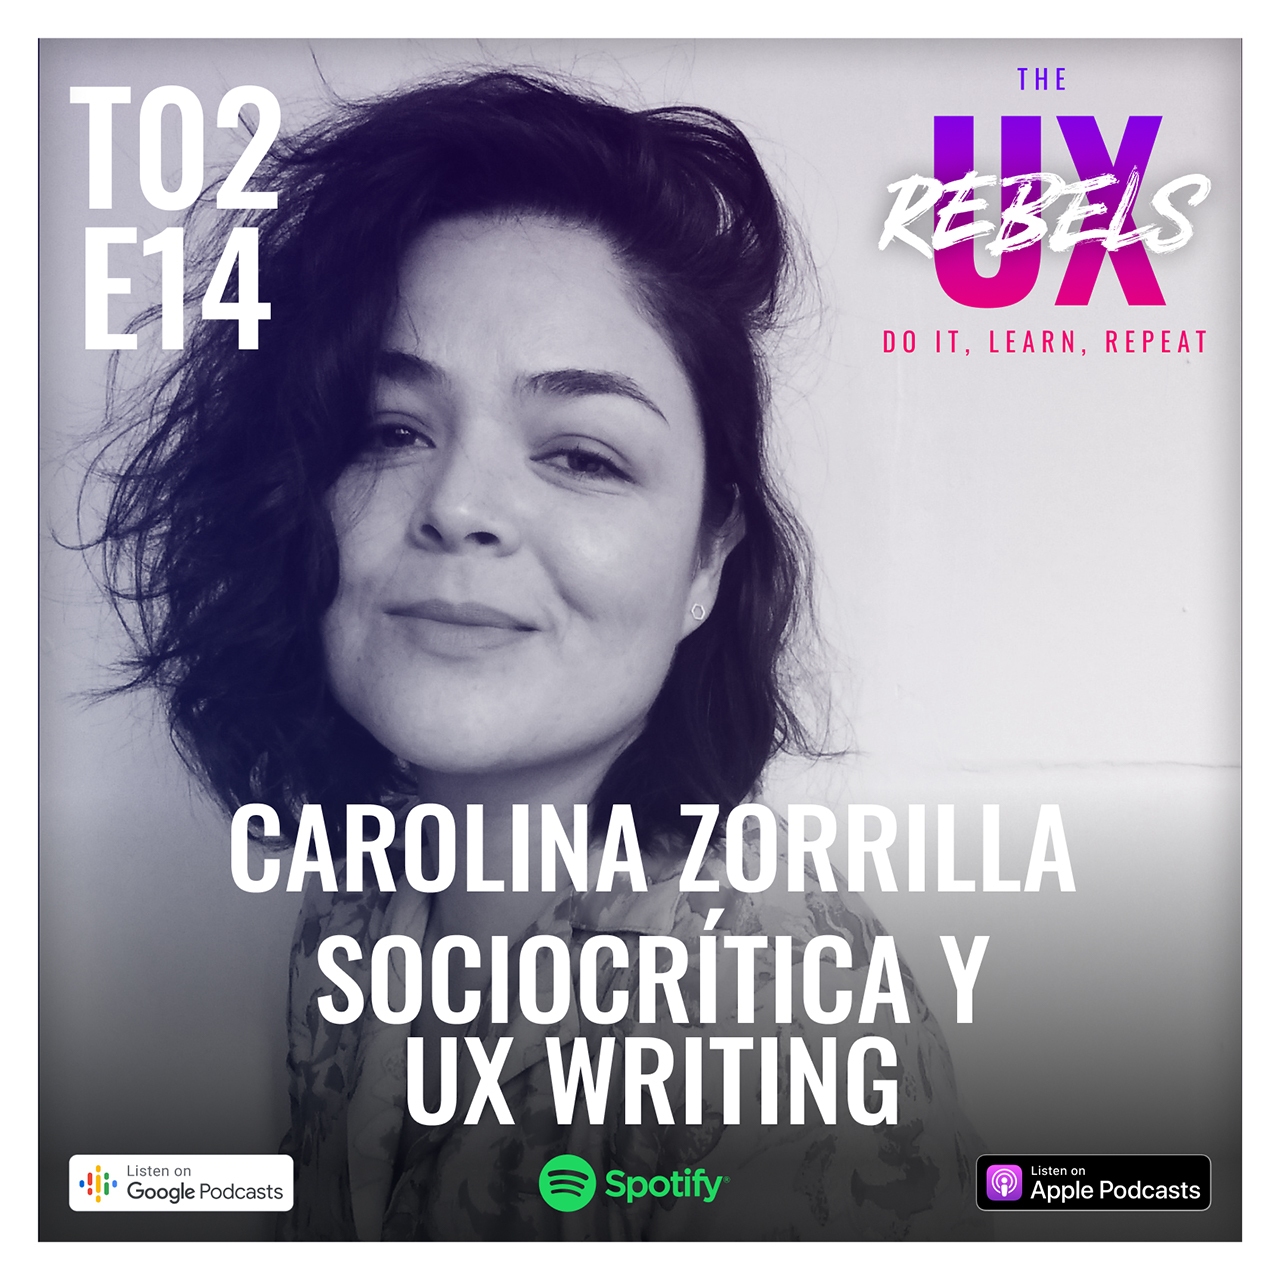 Escucha el episodio con Carolina Zorrilla sobre UX Writing